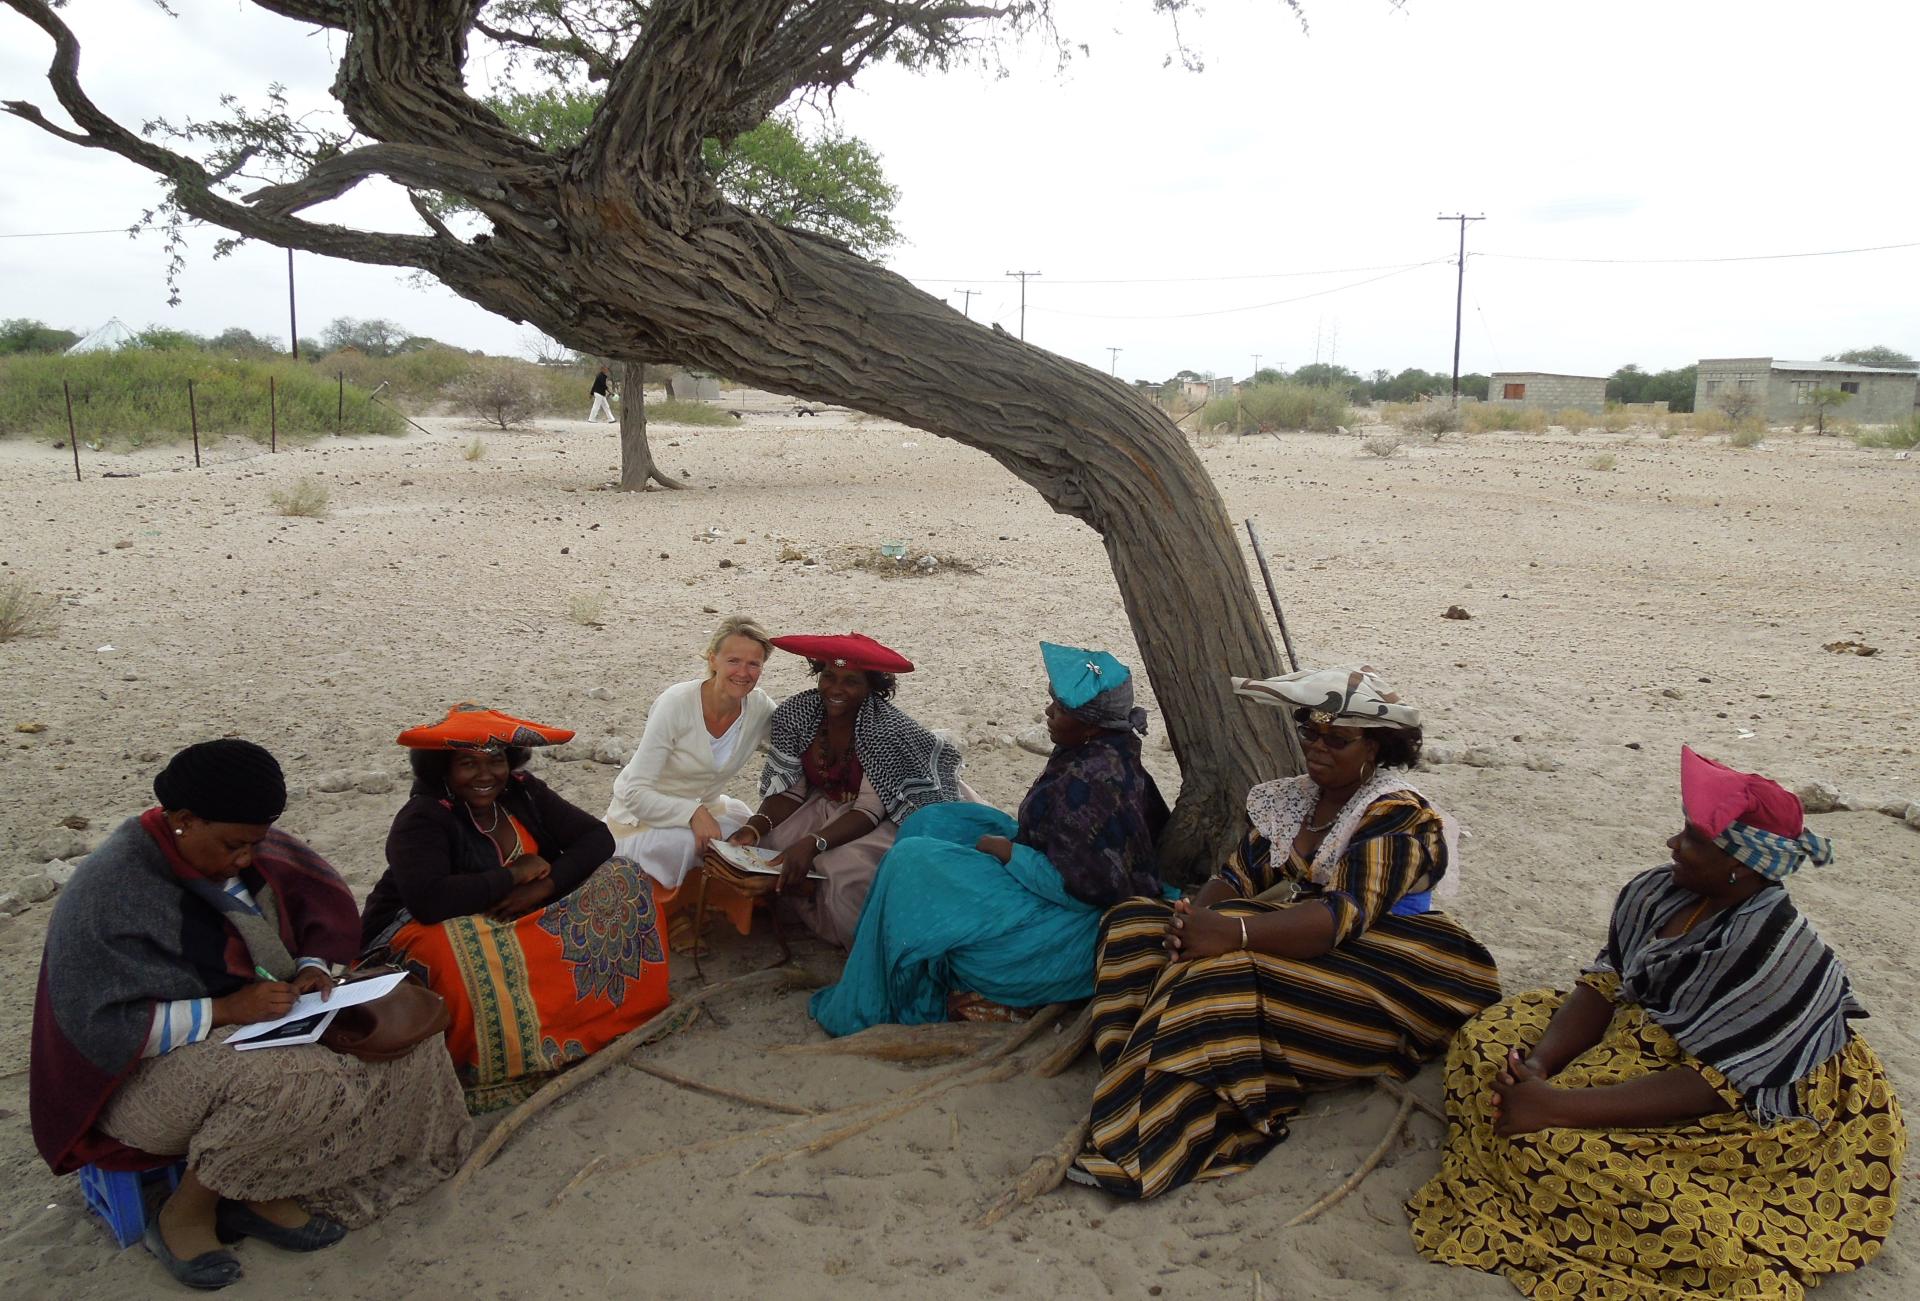 Tiina Harju vierailulla Rakopsin seurakunnassa Botswanassa. Kuvassa Tiina Harju istuu ulkona puun alla viiden paikallisen luterilaisen seurakunnan työntekijän kanssa.